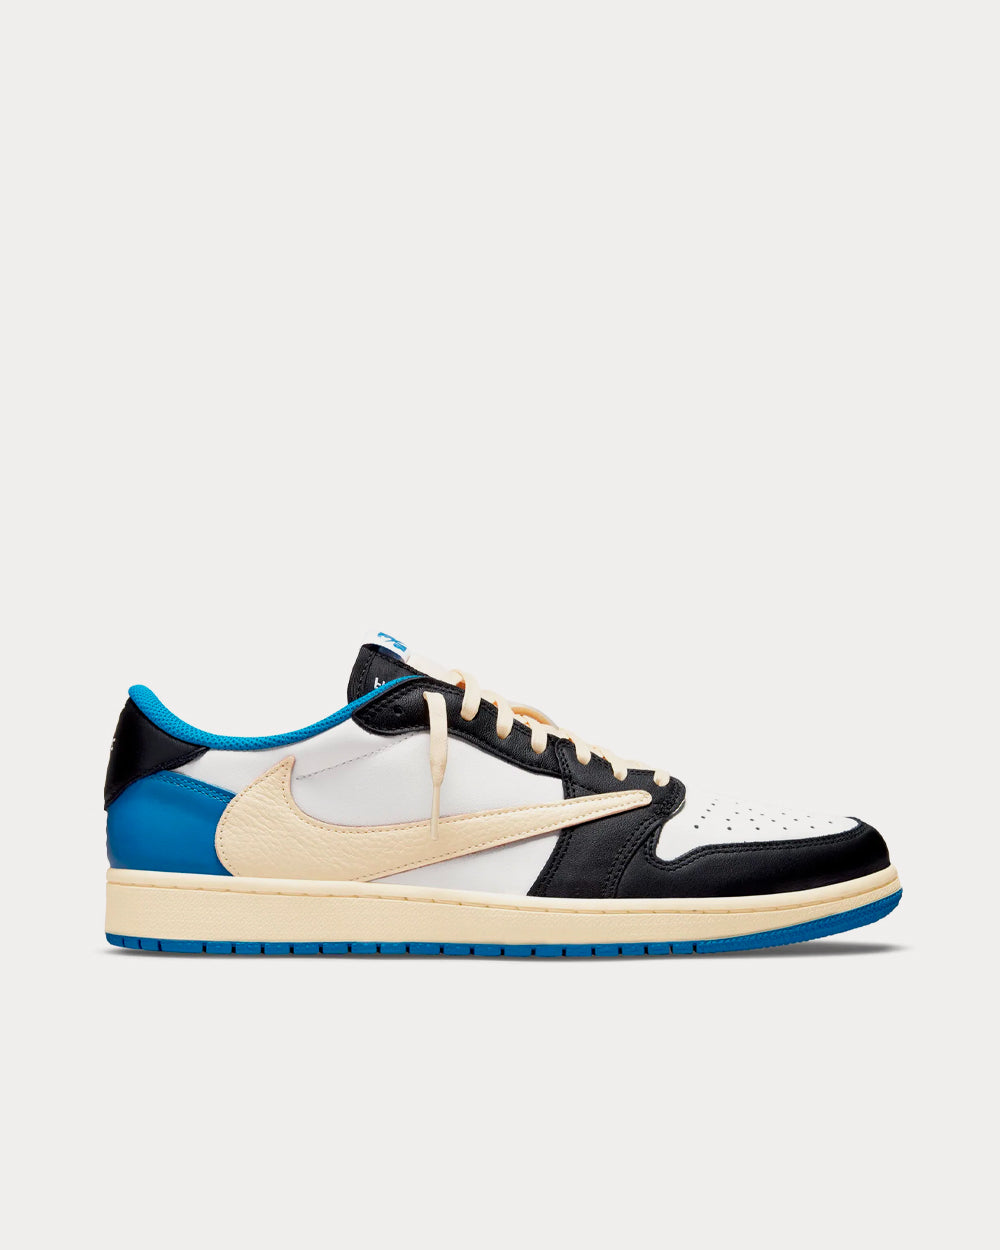 Nike Travis Scott x Fragment Design Air Jordan 1 OG Sail / Military Blue / Black Low Top Sneakers - in